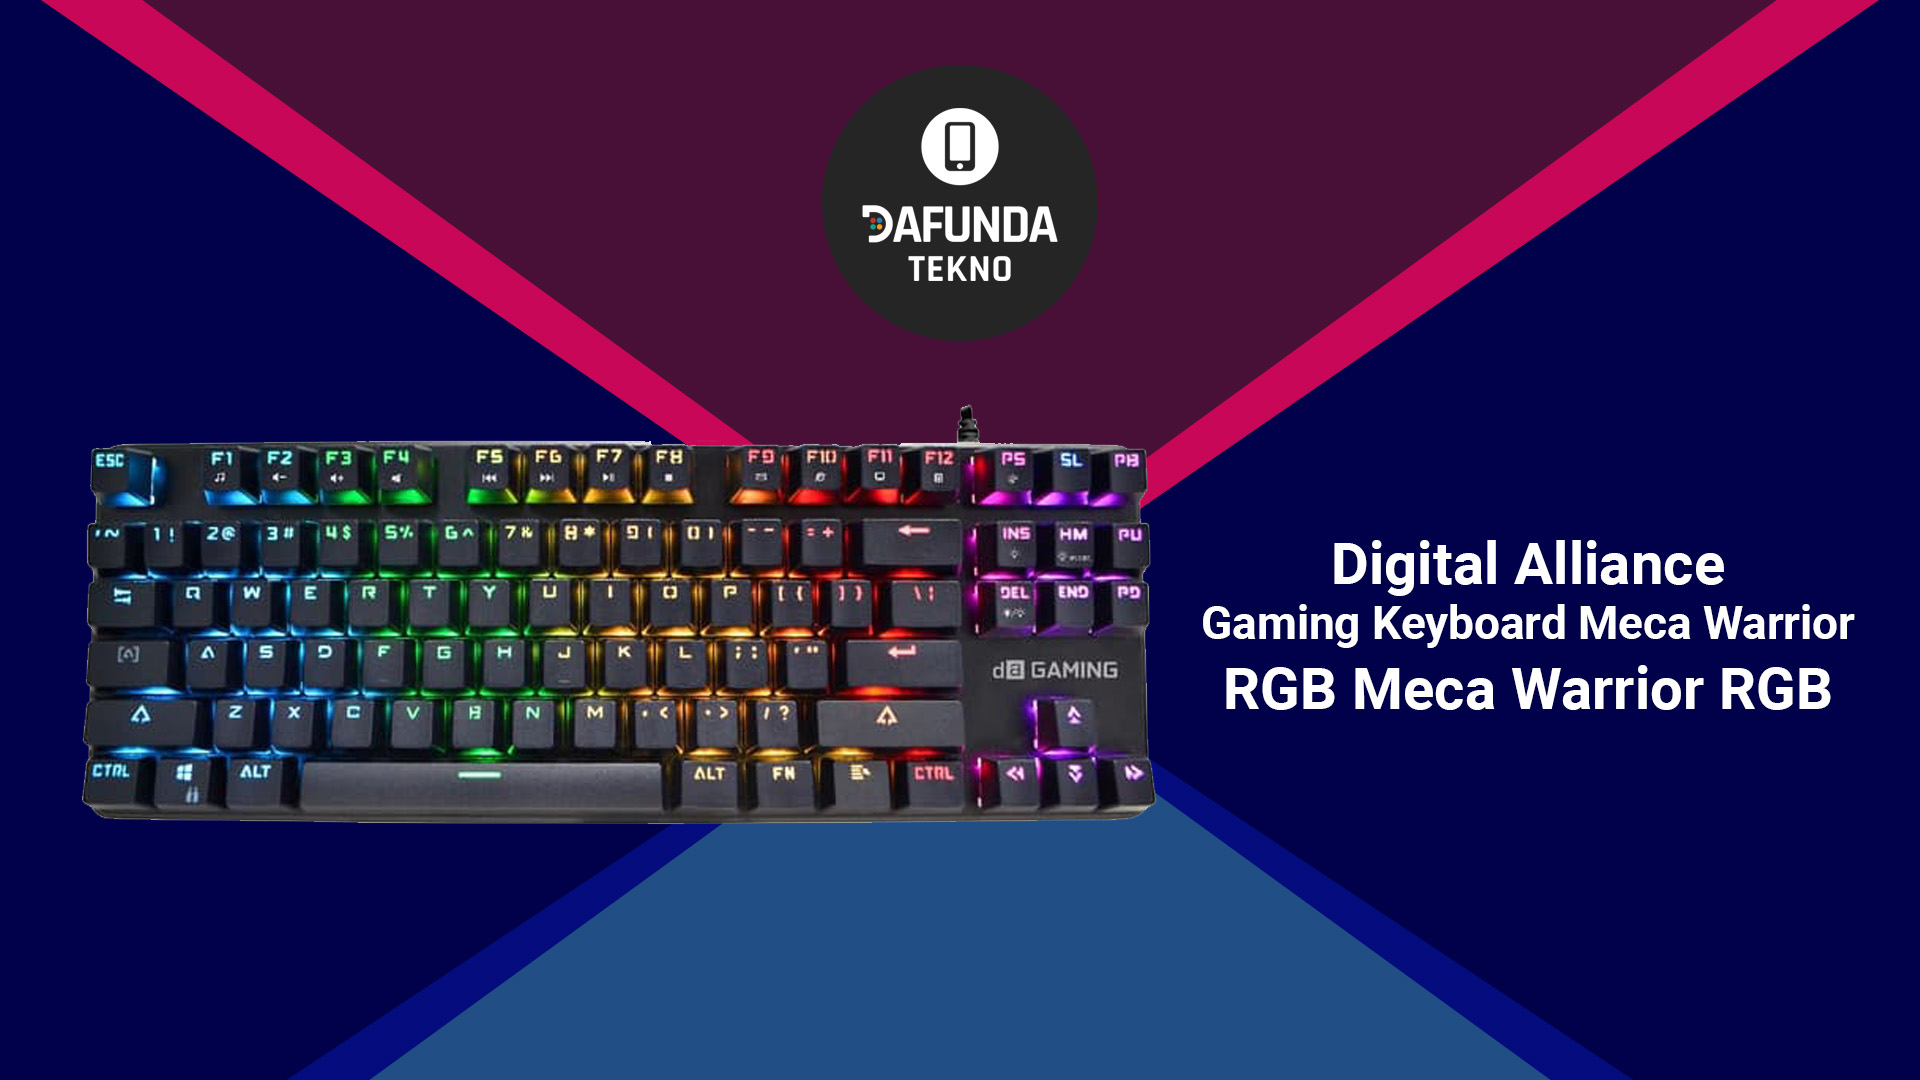 Digital Alliance Gaming Keyboard Meca Warrior Rgb Meca Warrior Rgb